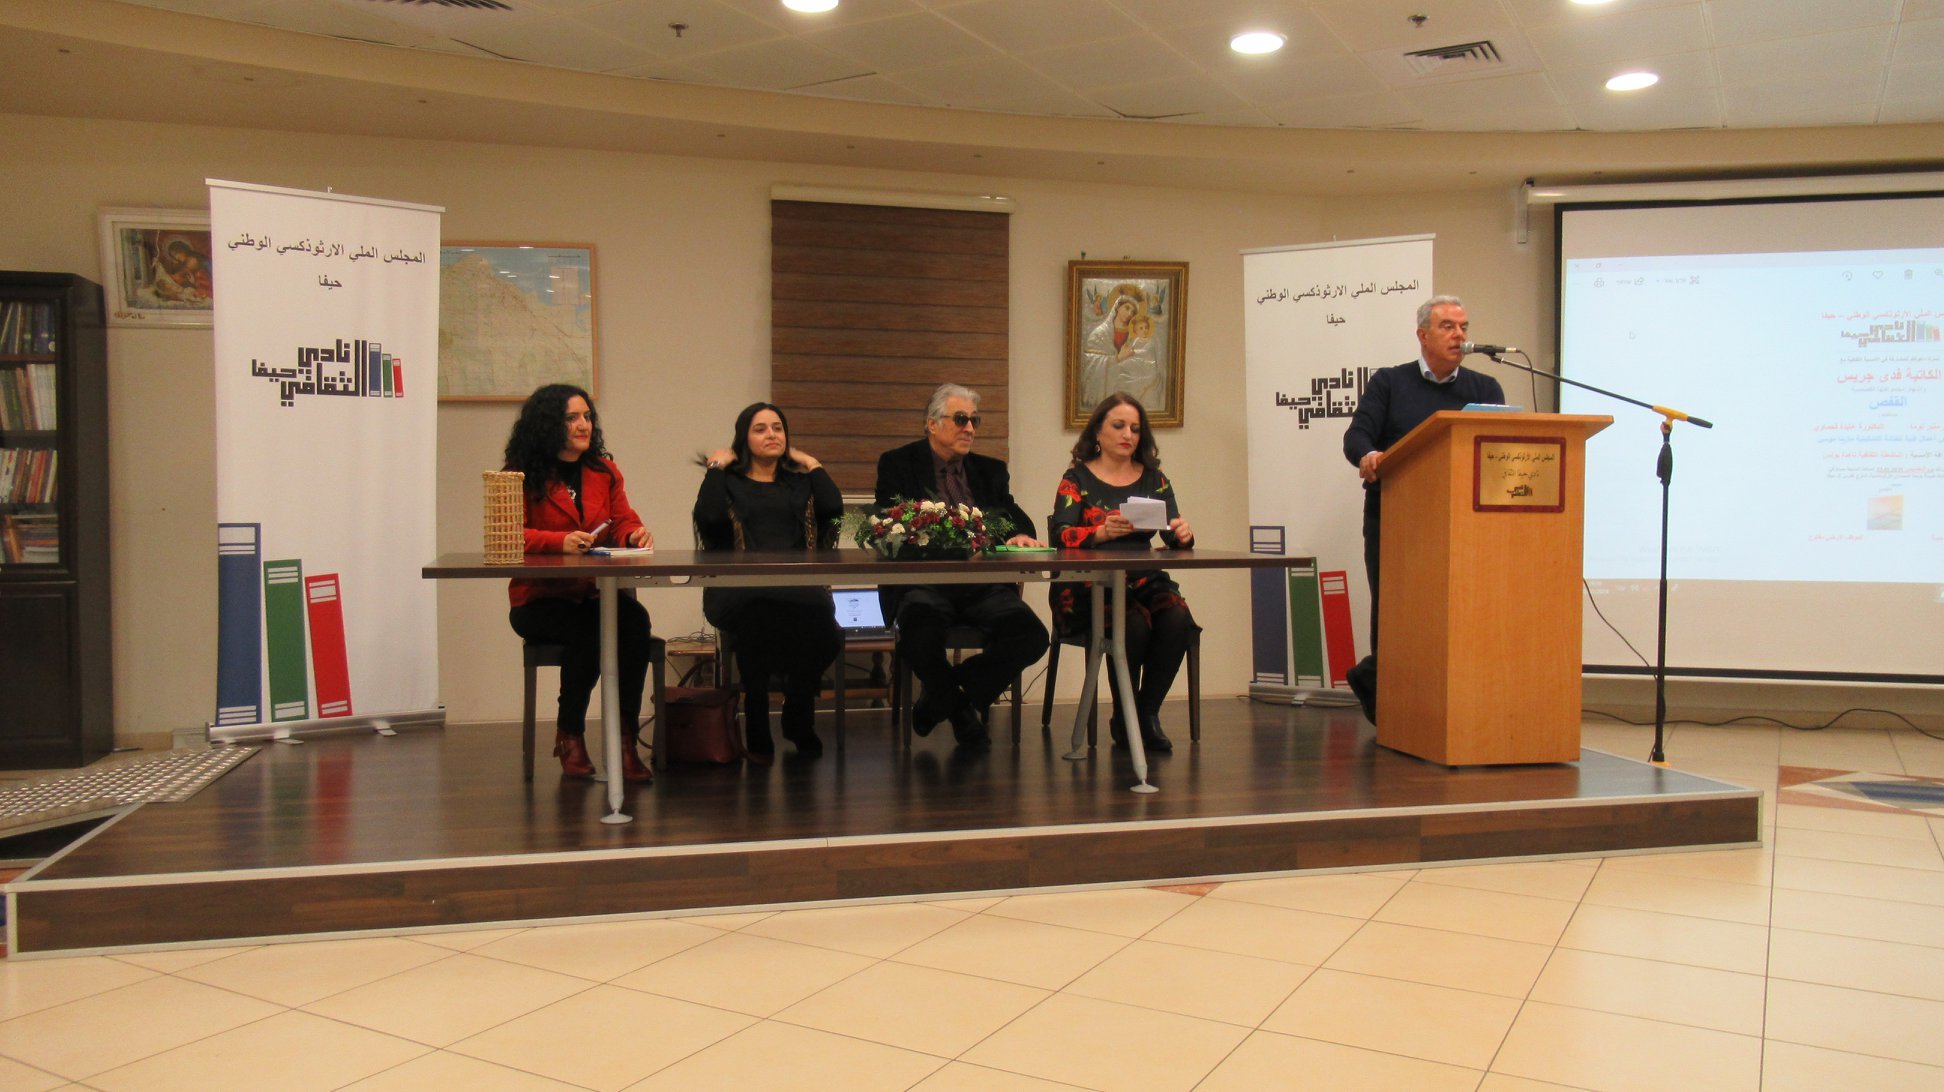 نادي حيفا الثقافي يحتفي بالكاتبة فدى جريس في أمسية إشهار مجموعتها القصصية " القفص".-6